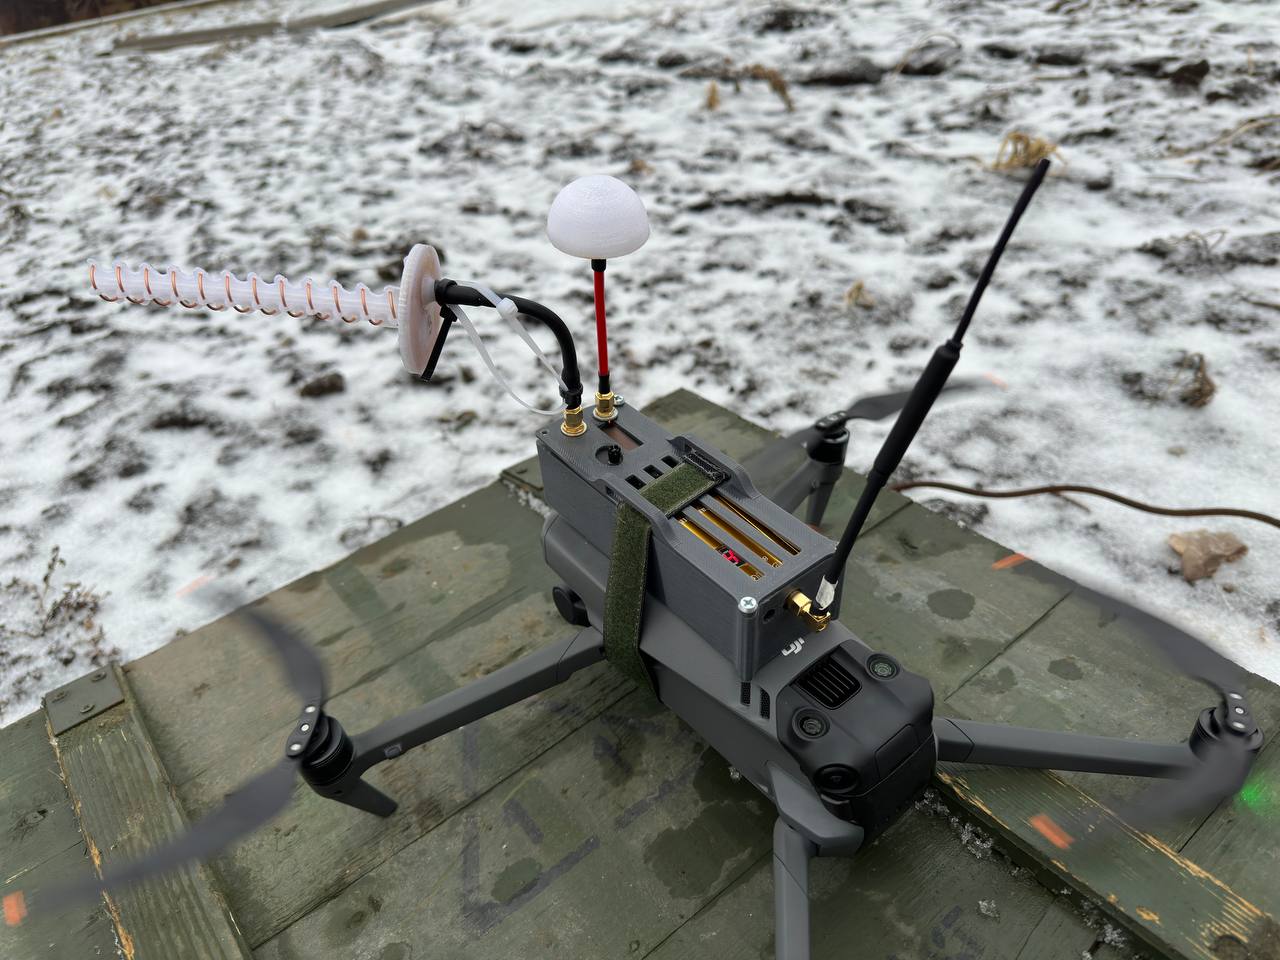 Repeater-drone made of Mavic in russia